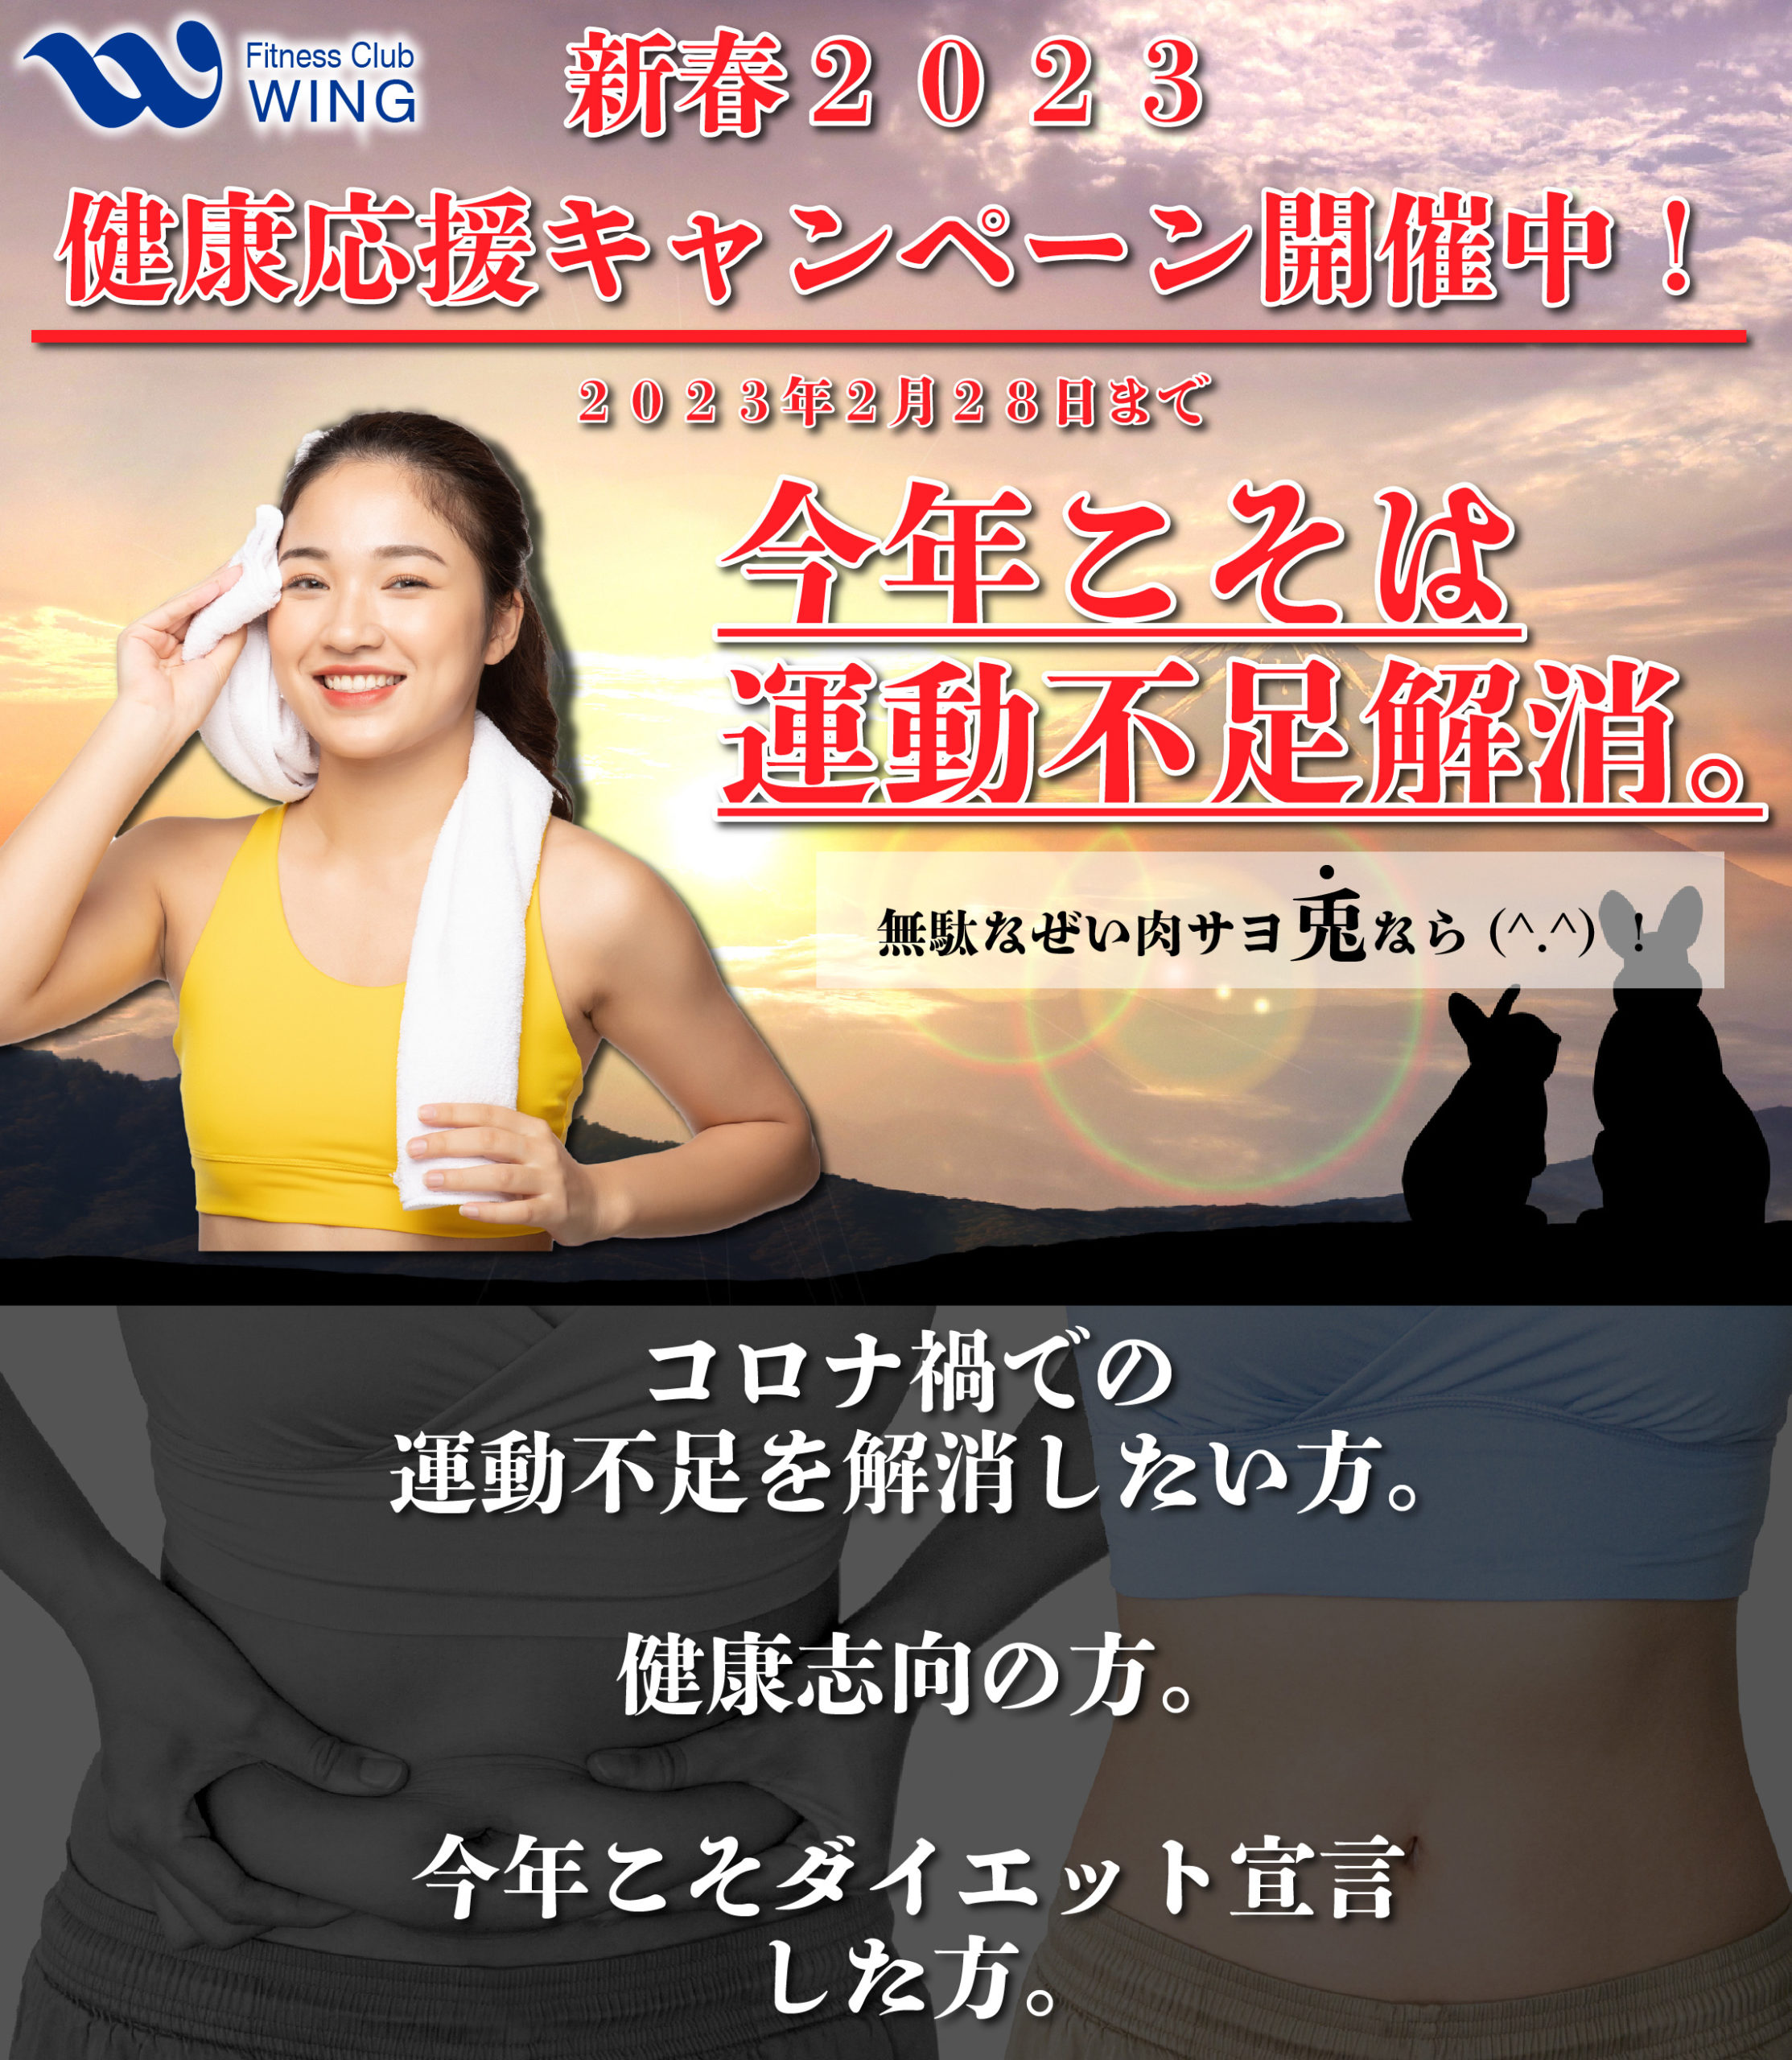 青森県のフィットネスクラブウイングから2023年新春健康応援キャンペーンのお知らせです。